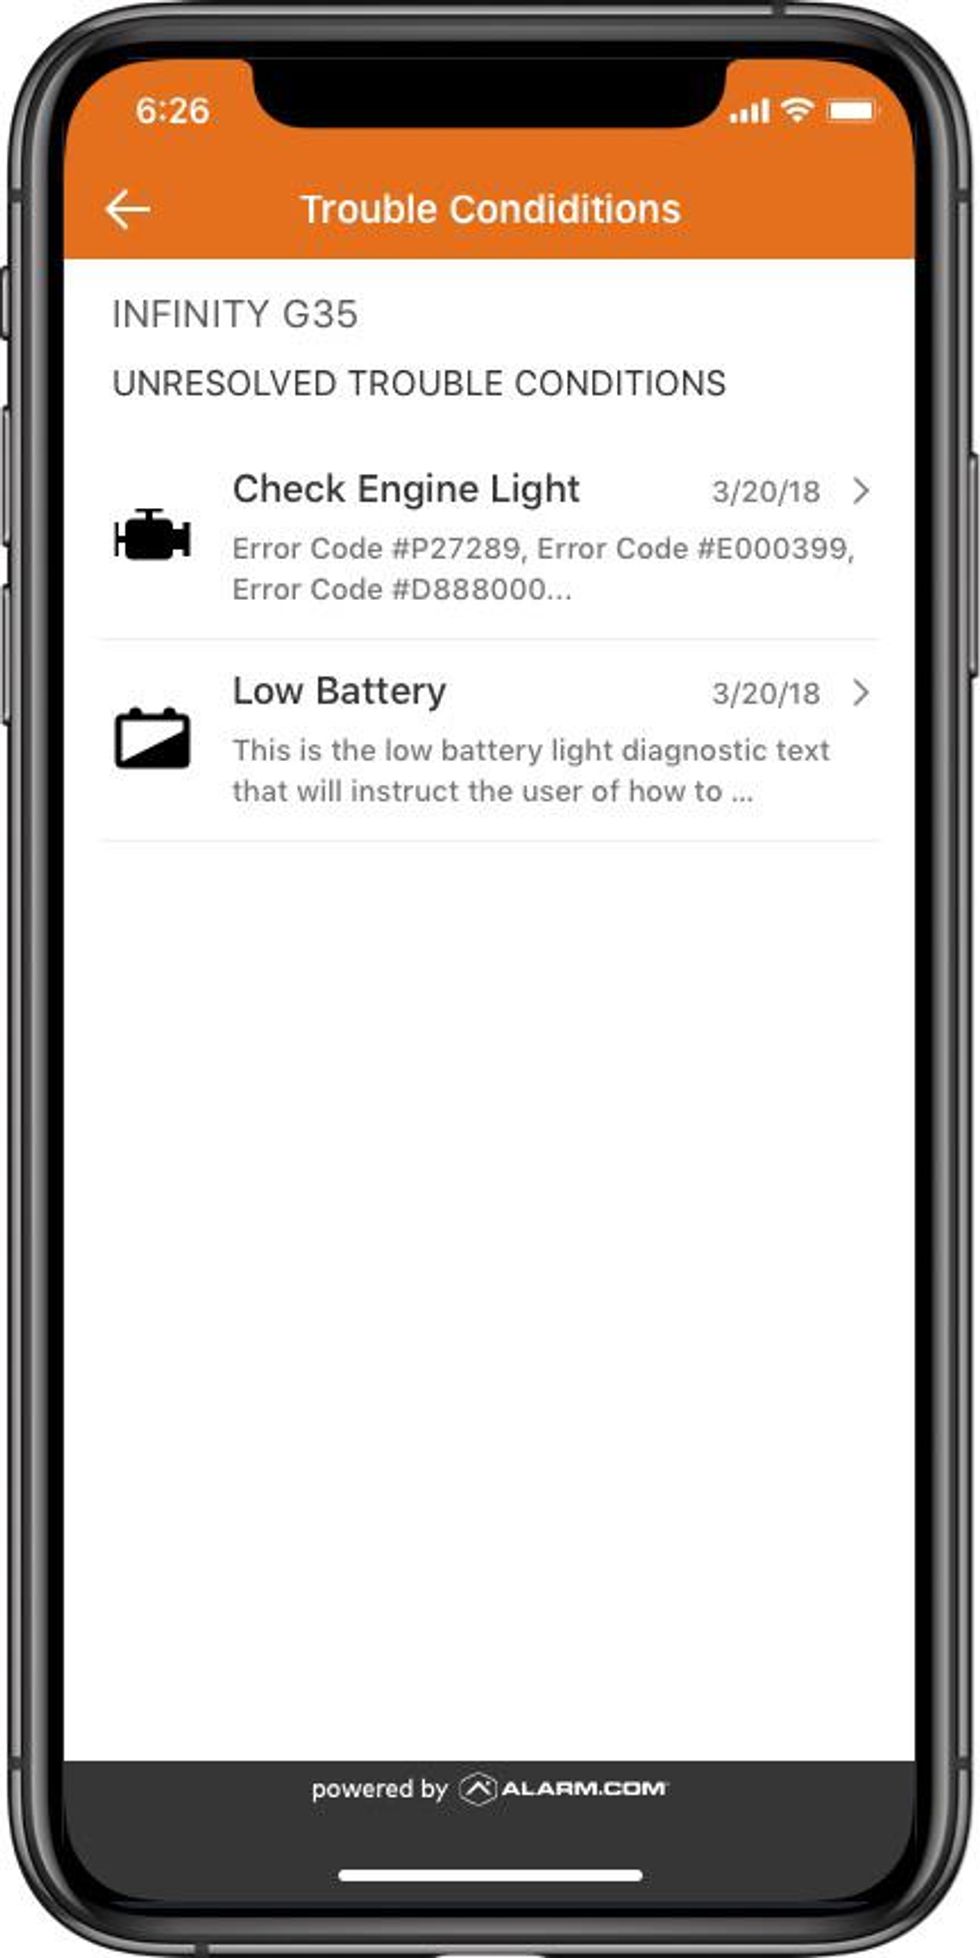 The Alarm.com mobile app with car